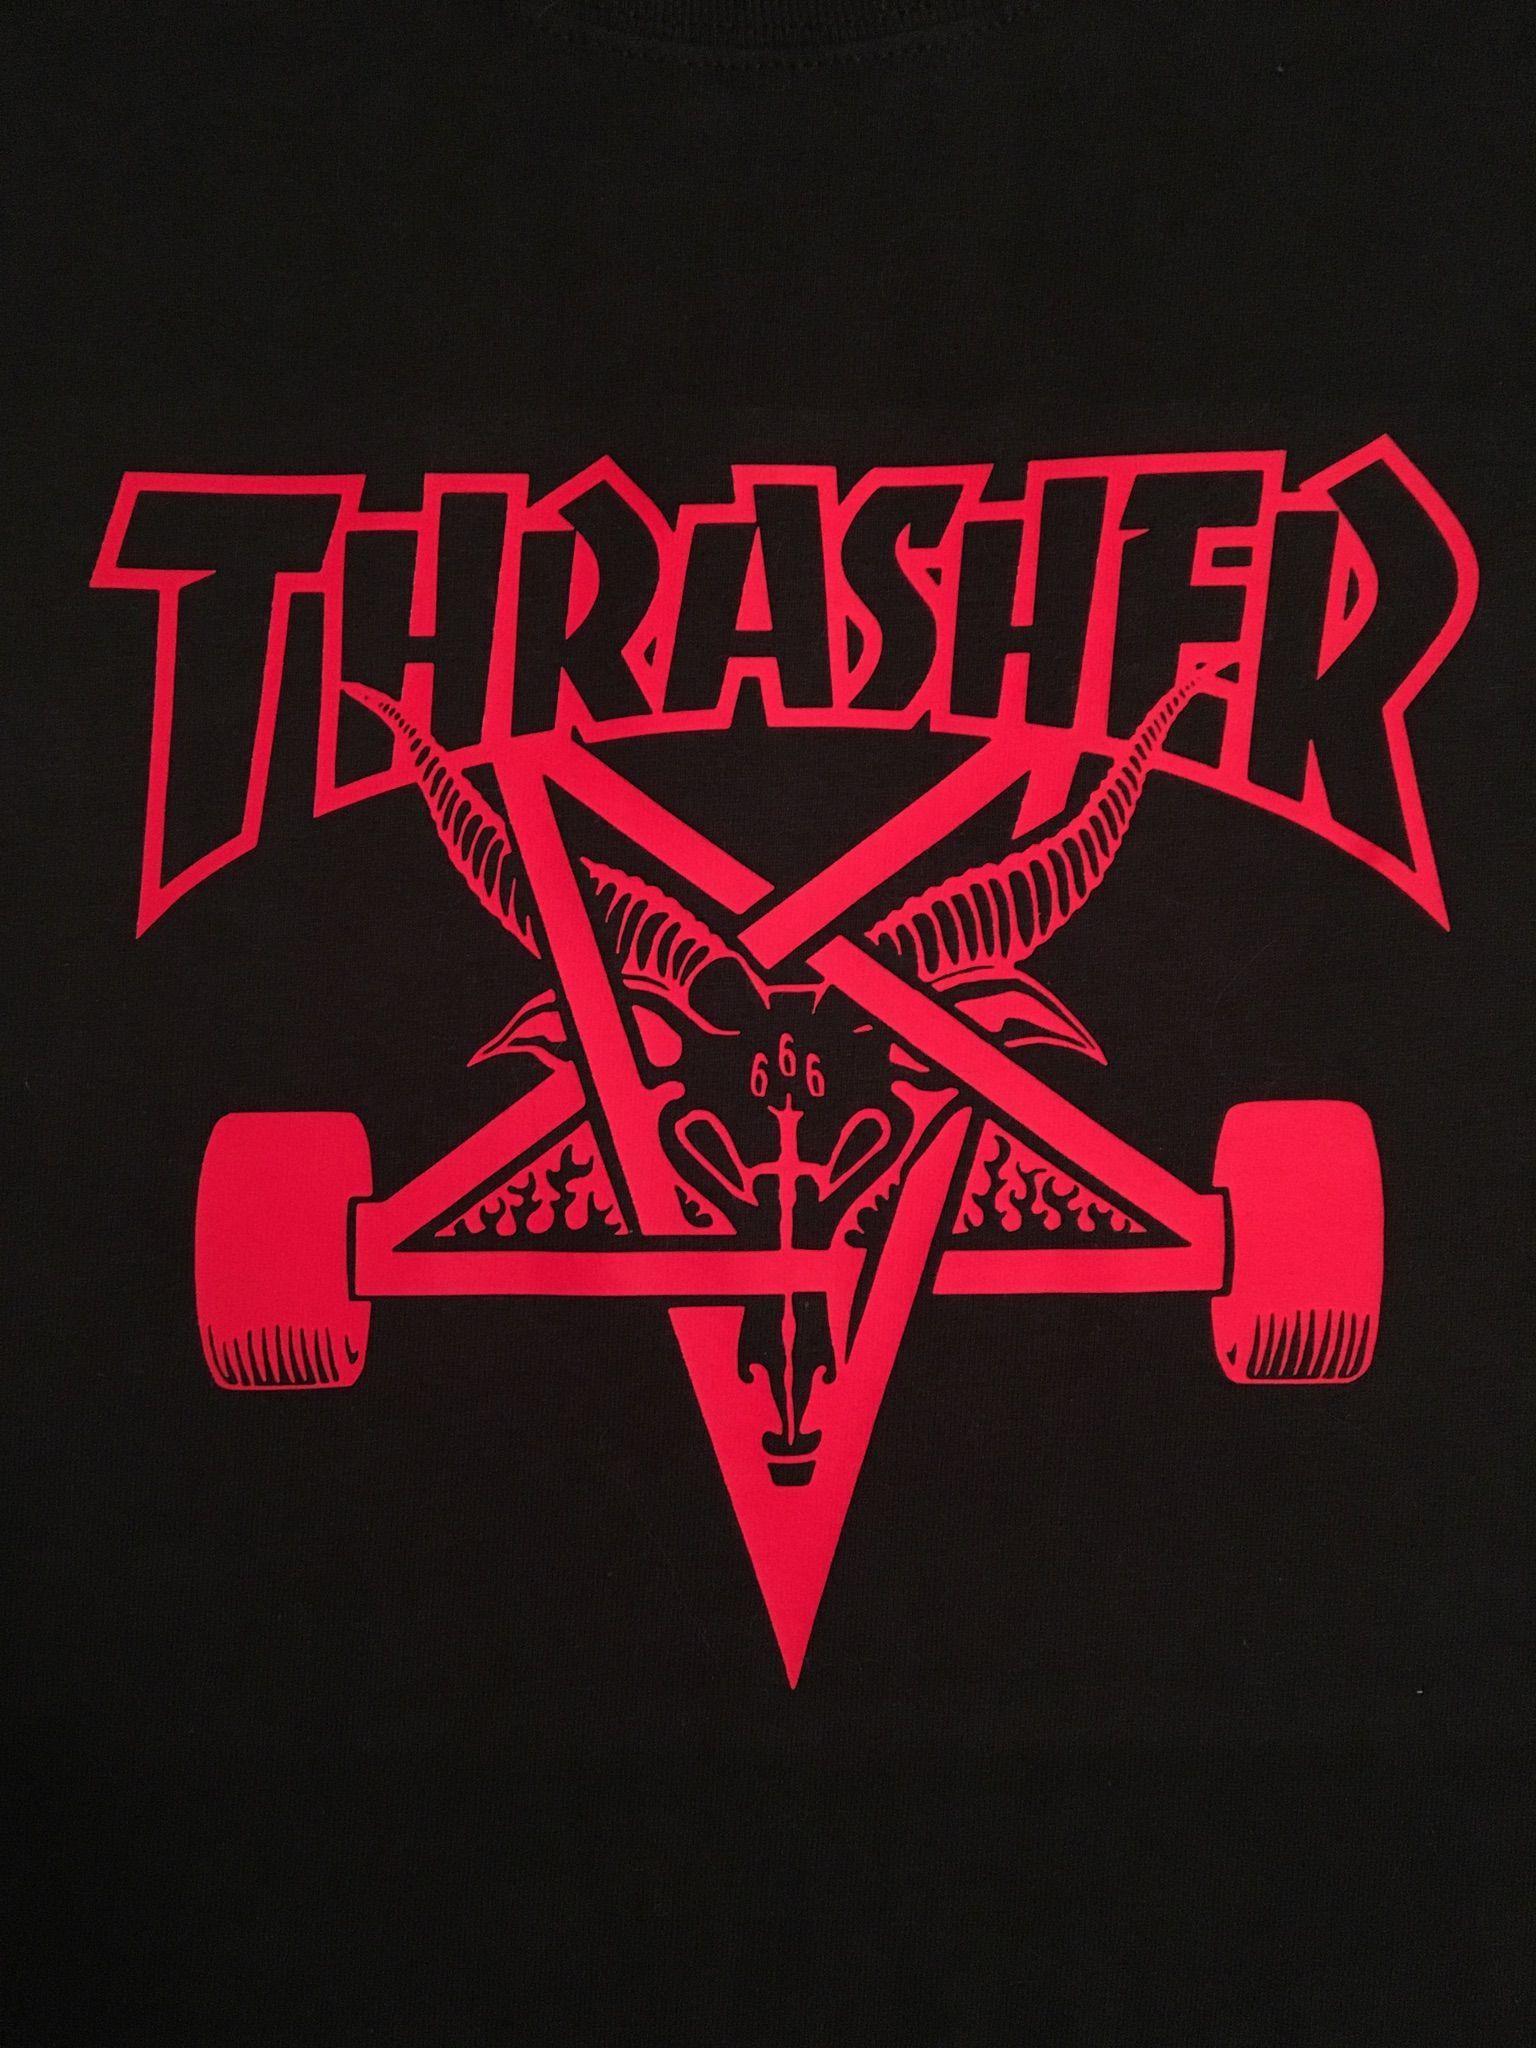 Neon Thrasher Goat Logo - Thrasher Skateboard Magazine, Skate Goat | DIY shirts in 2019 ...